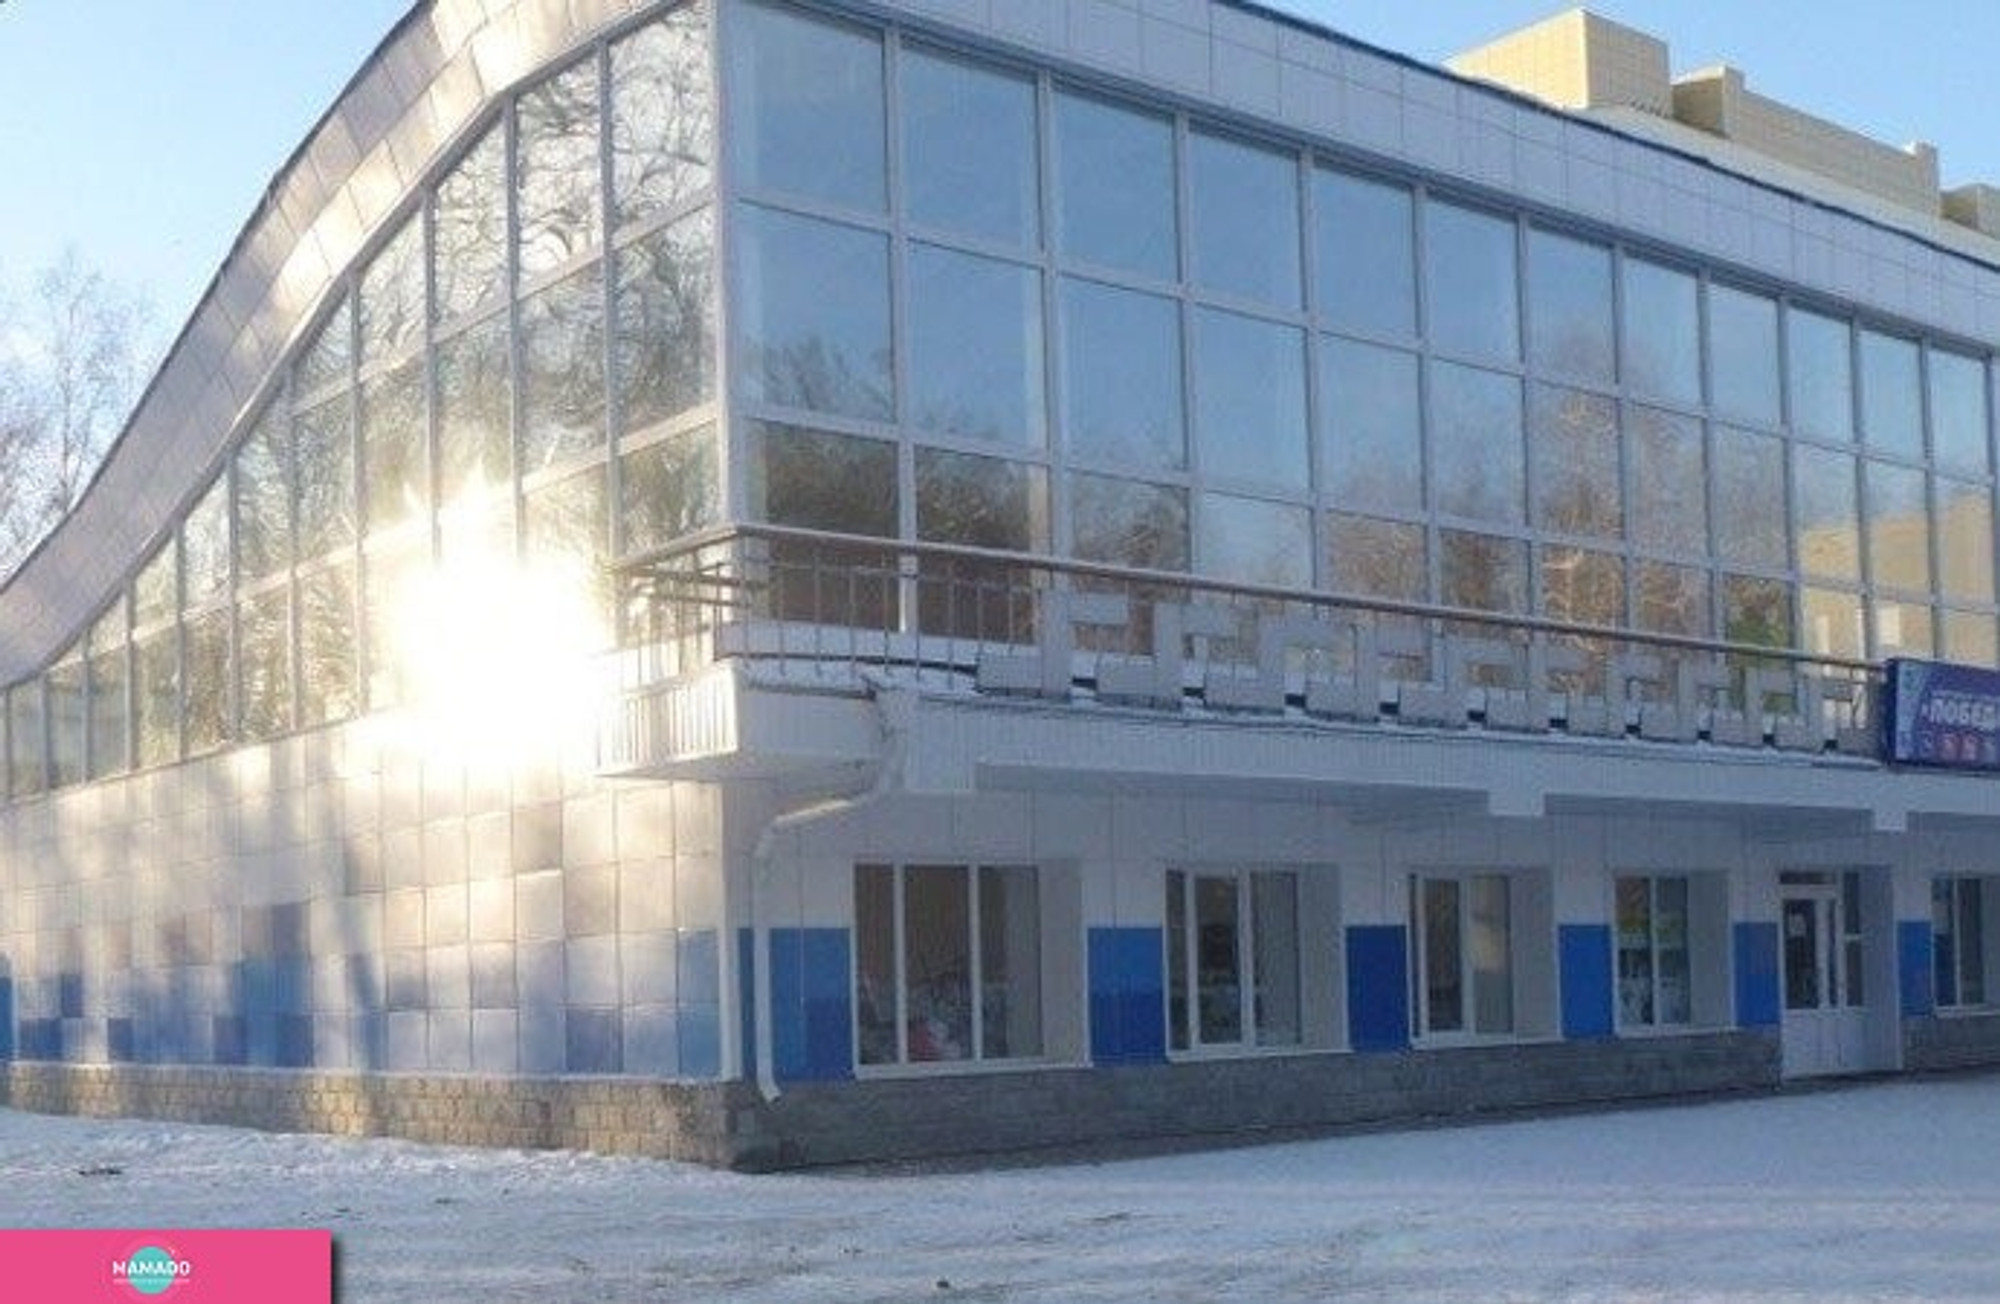 "Победа", спорткомплекс с бассейном, тренажерный зал в Кировском районе, Томск 